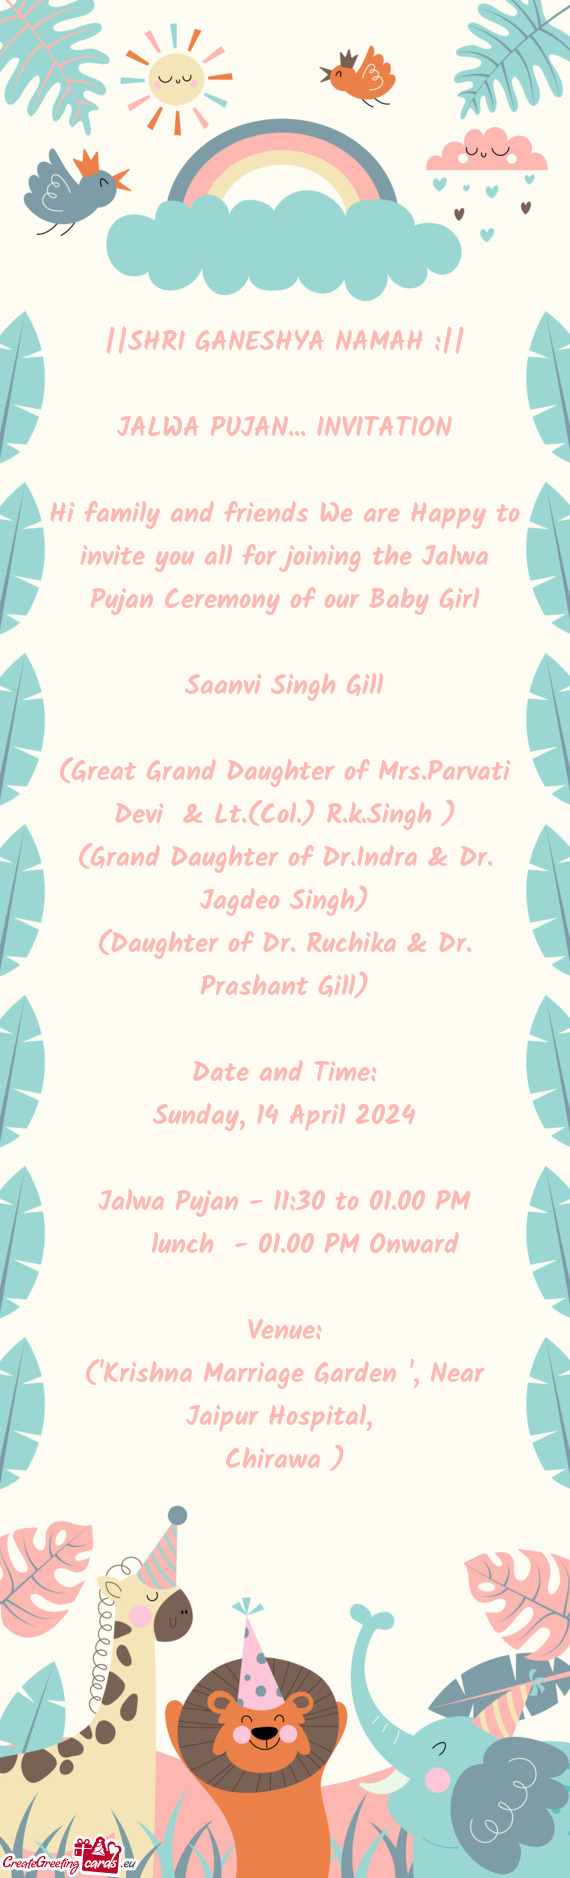 (Great Grand Daughter of Mrs.Parvati Devi & Lt.(Col.) R.k.Singh )